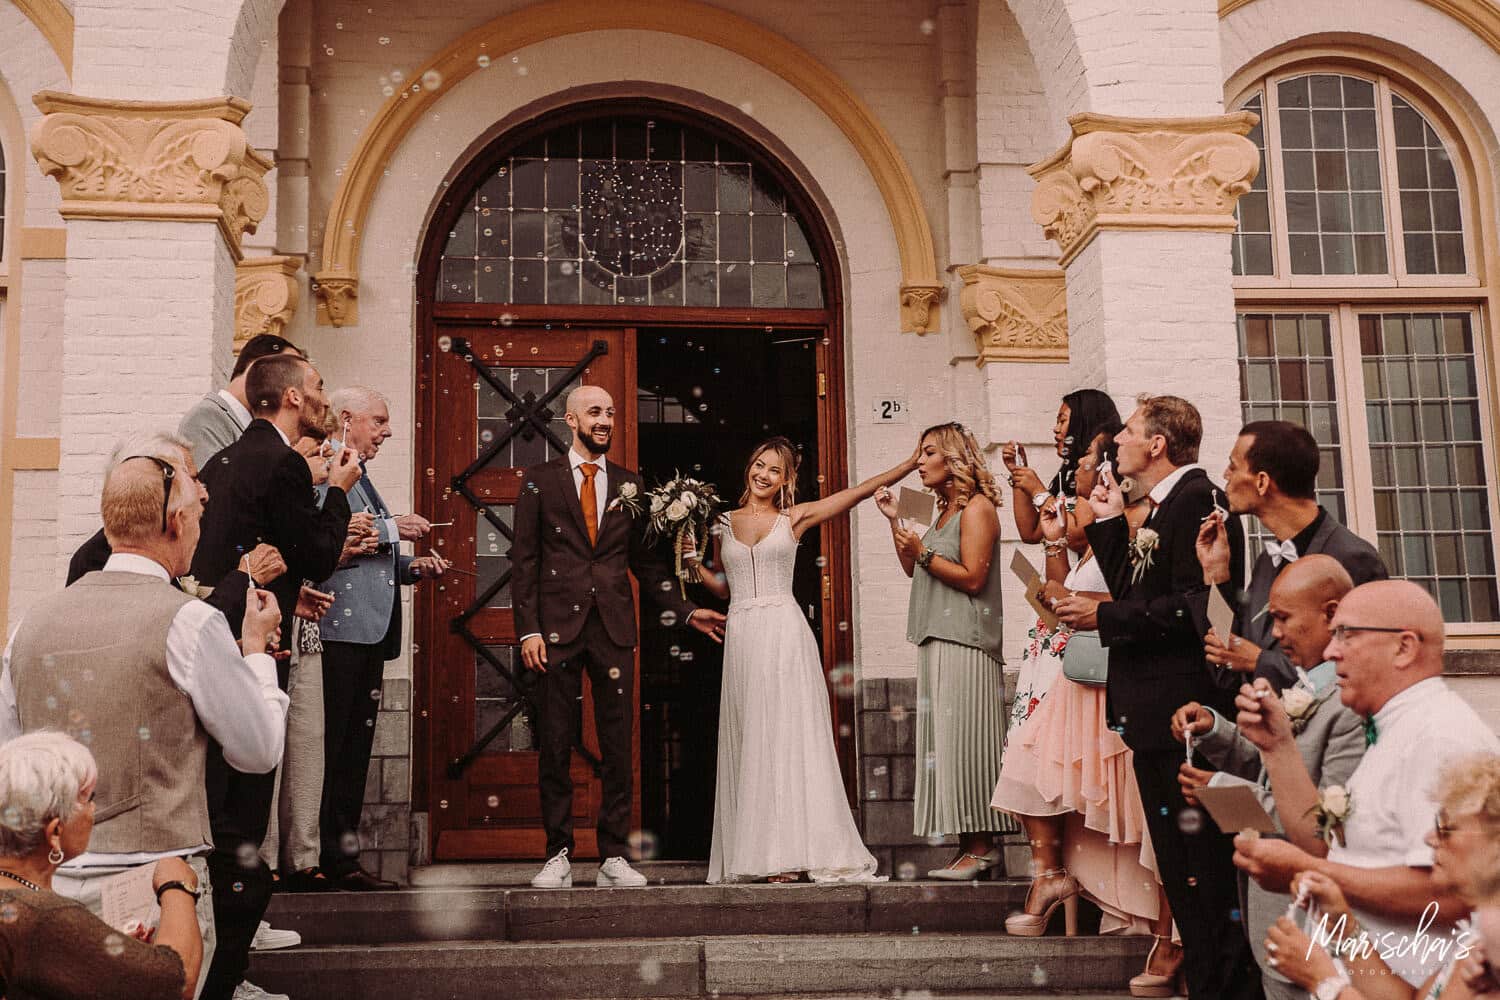 Bruidsfotograaf voor een bruidsreportage van een bruiloft in regio Zeeland